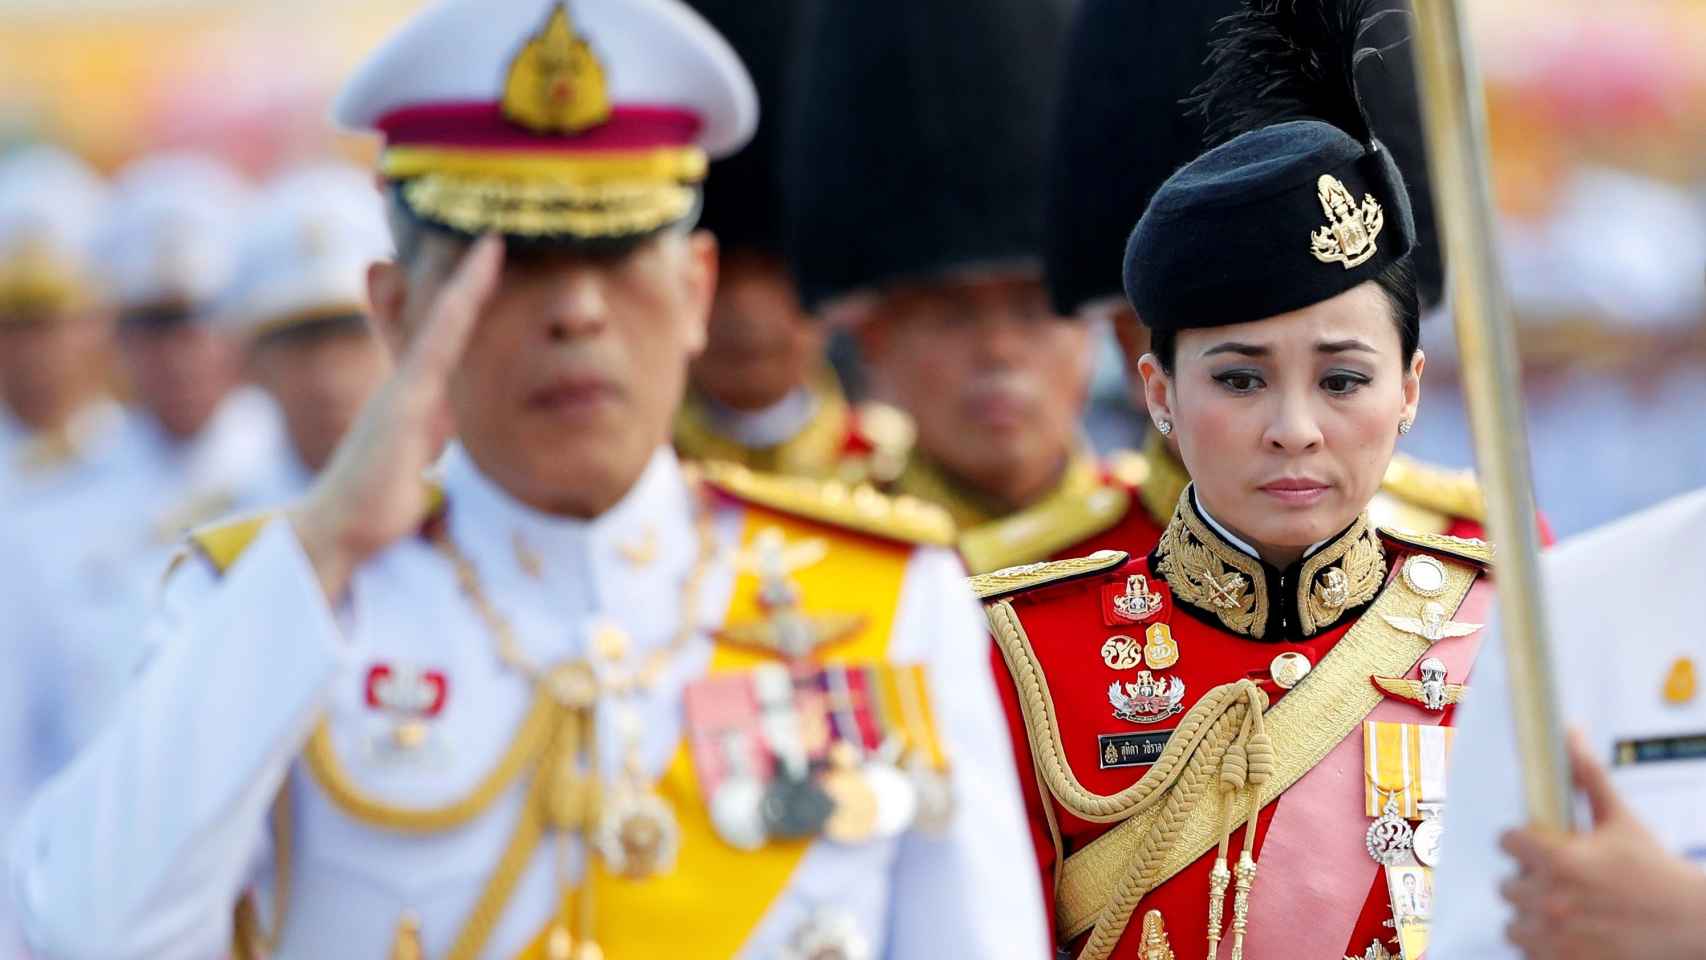 Fotografía de archivo que muestra al rey tailandés Maha Vajiralongkorn Bodindradebayavarangkun junto a la general Suthida Vajiralongkorn na Ayudhya , miembro de la Guardia Real tailandesa, durante una ceremonia en Bangkok (Tailandia), el 6 de abril de 2019.